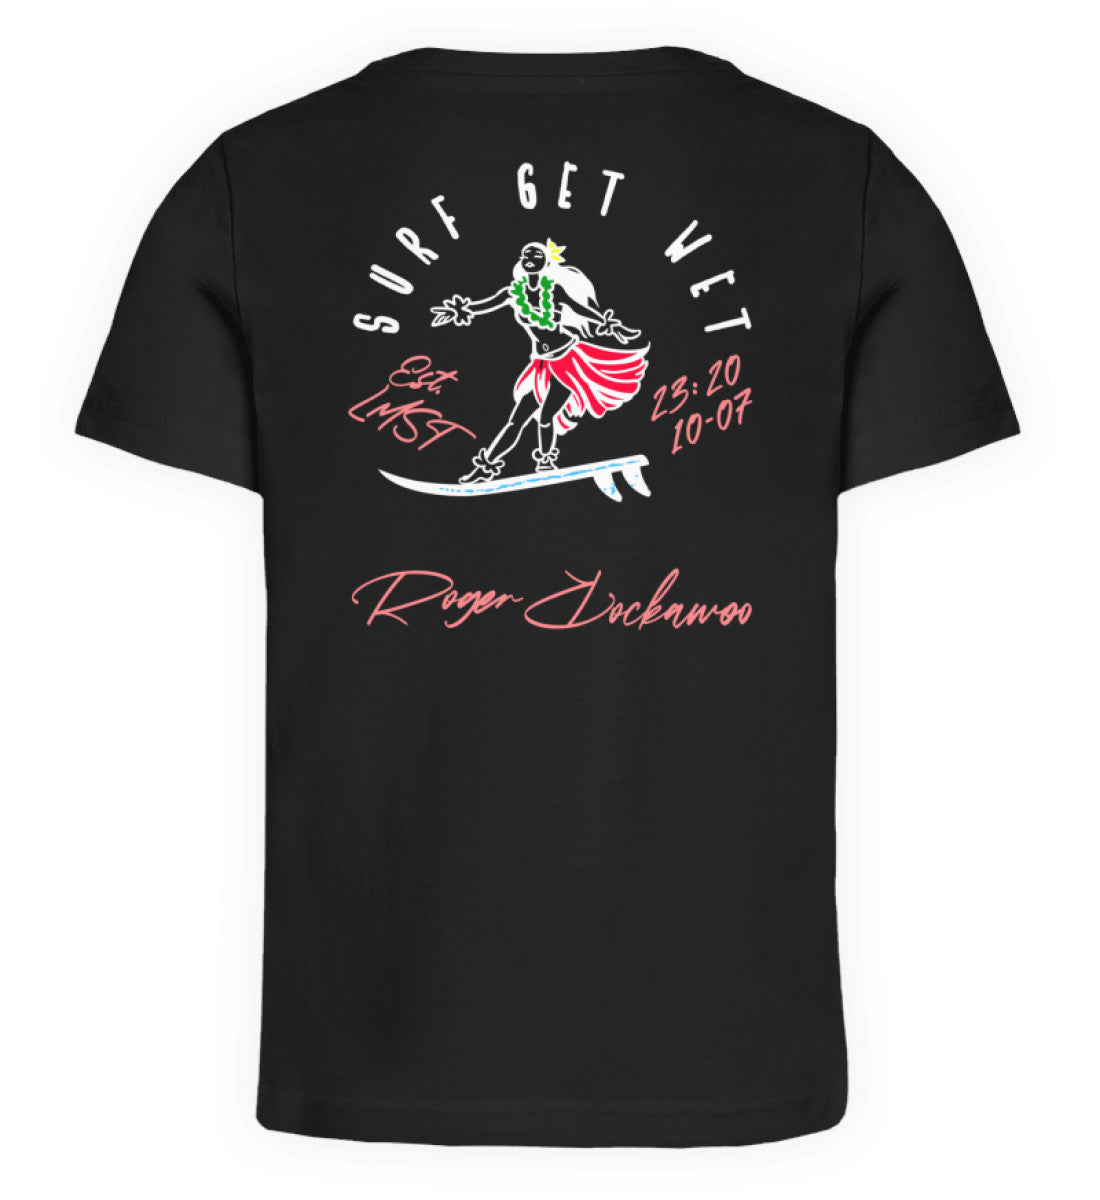 Schwarzes Kinder T-Shirt für Mädchen und Jungen bedruckt mit dem Design der Roger Rockawoo Kollektion Surf Get Wet